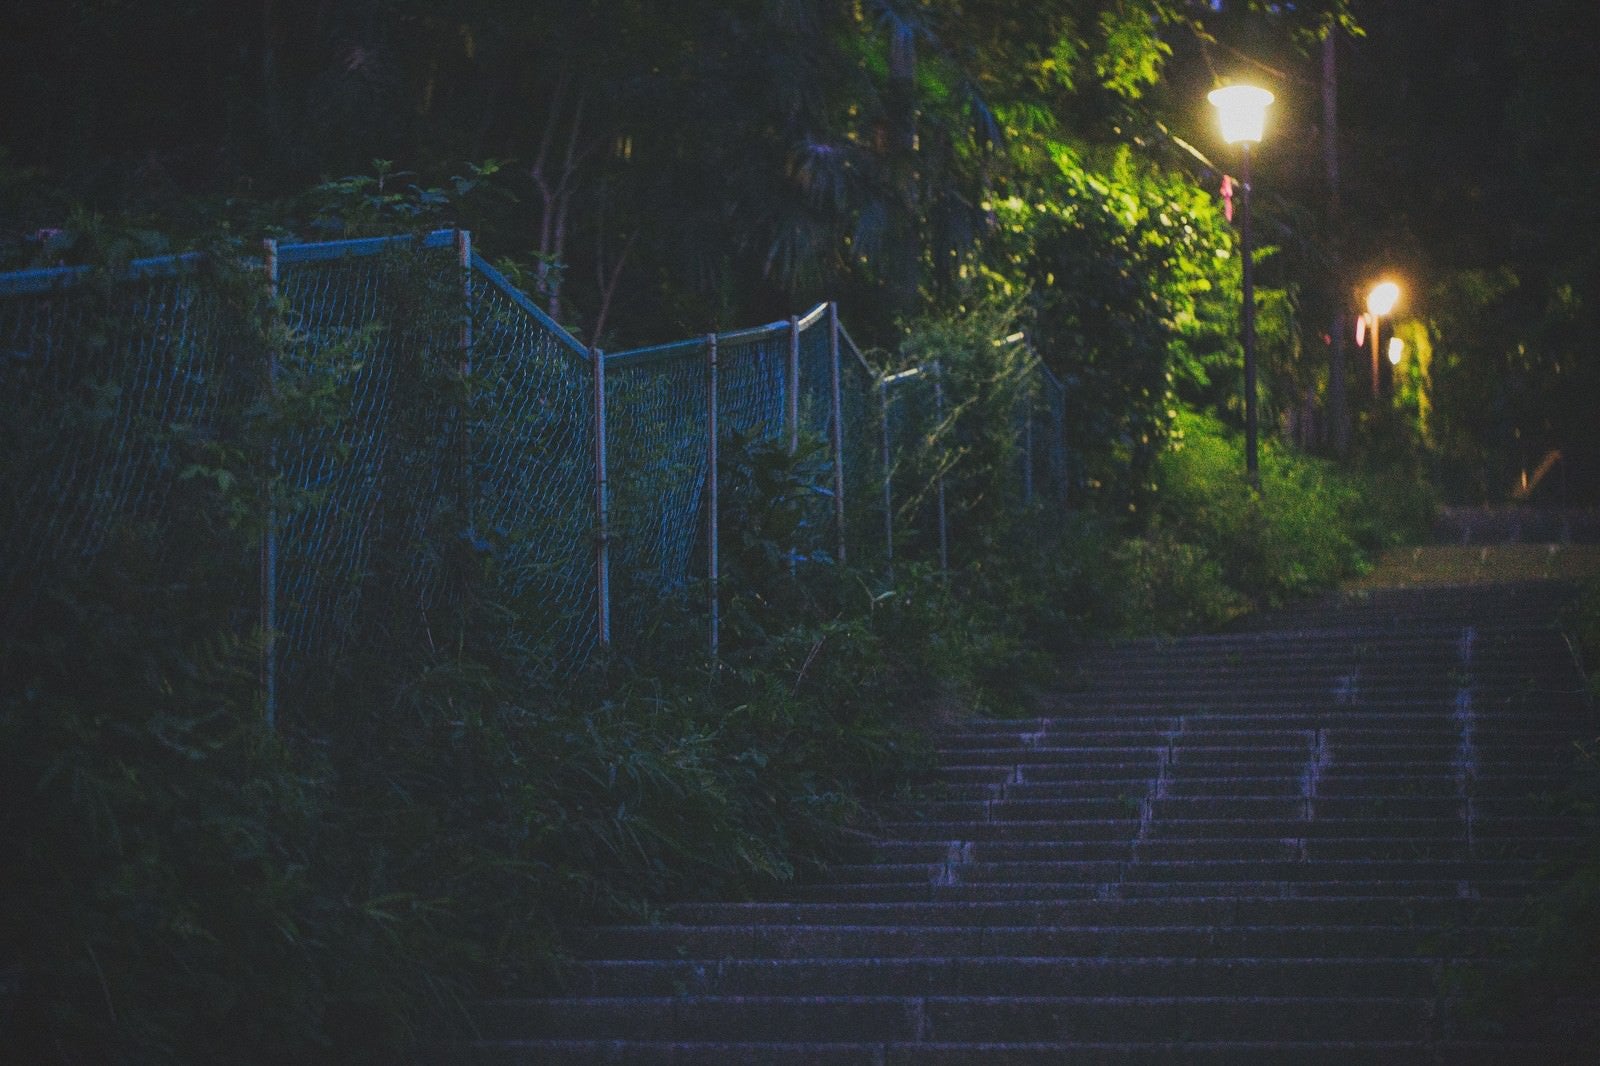 「暗い階段と街灯」の写真